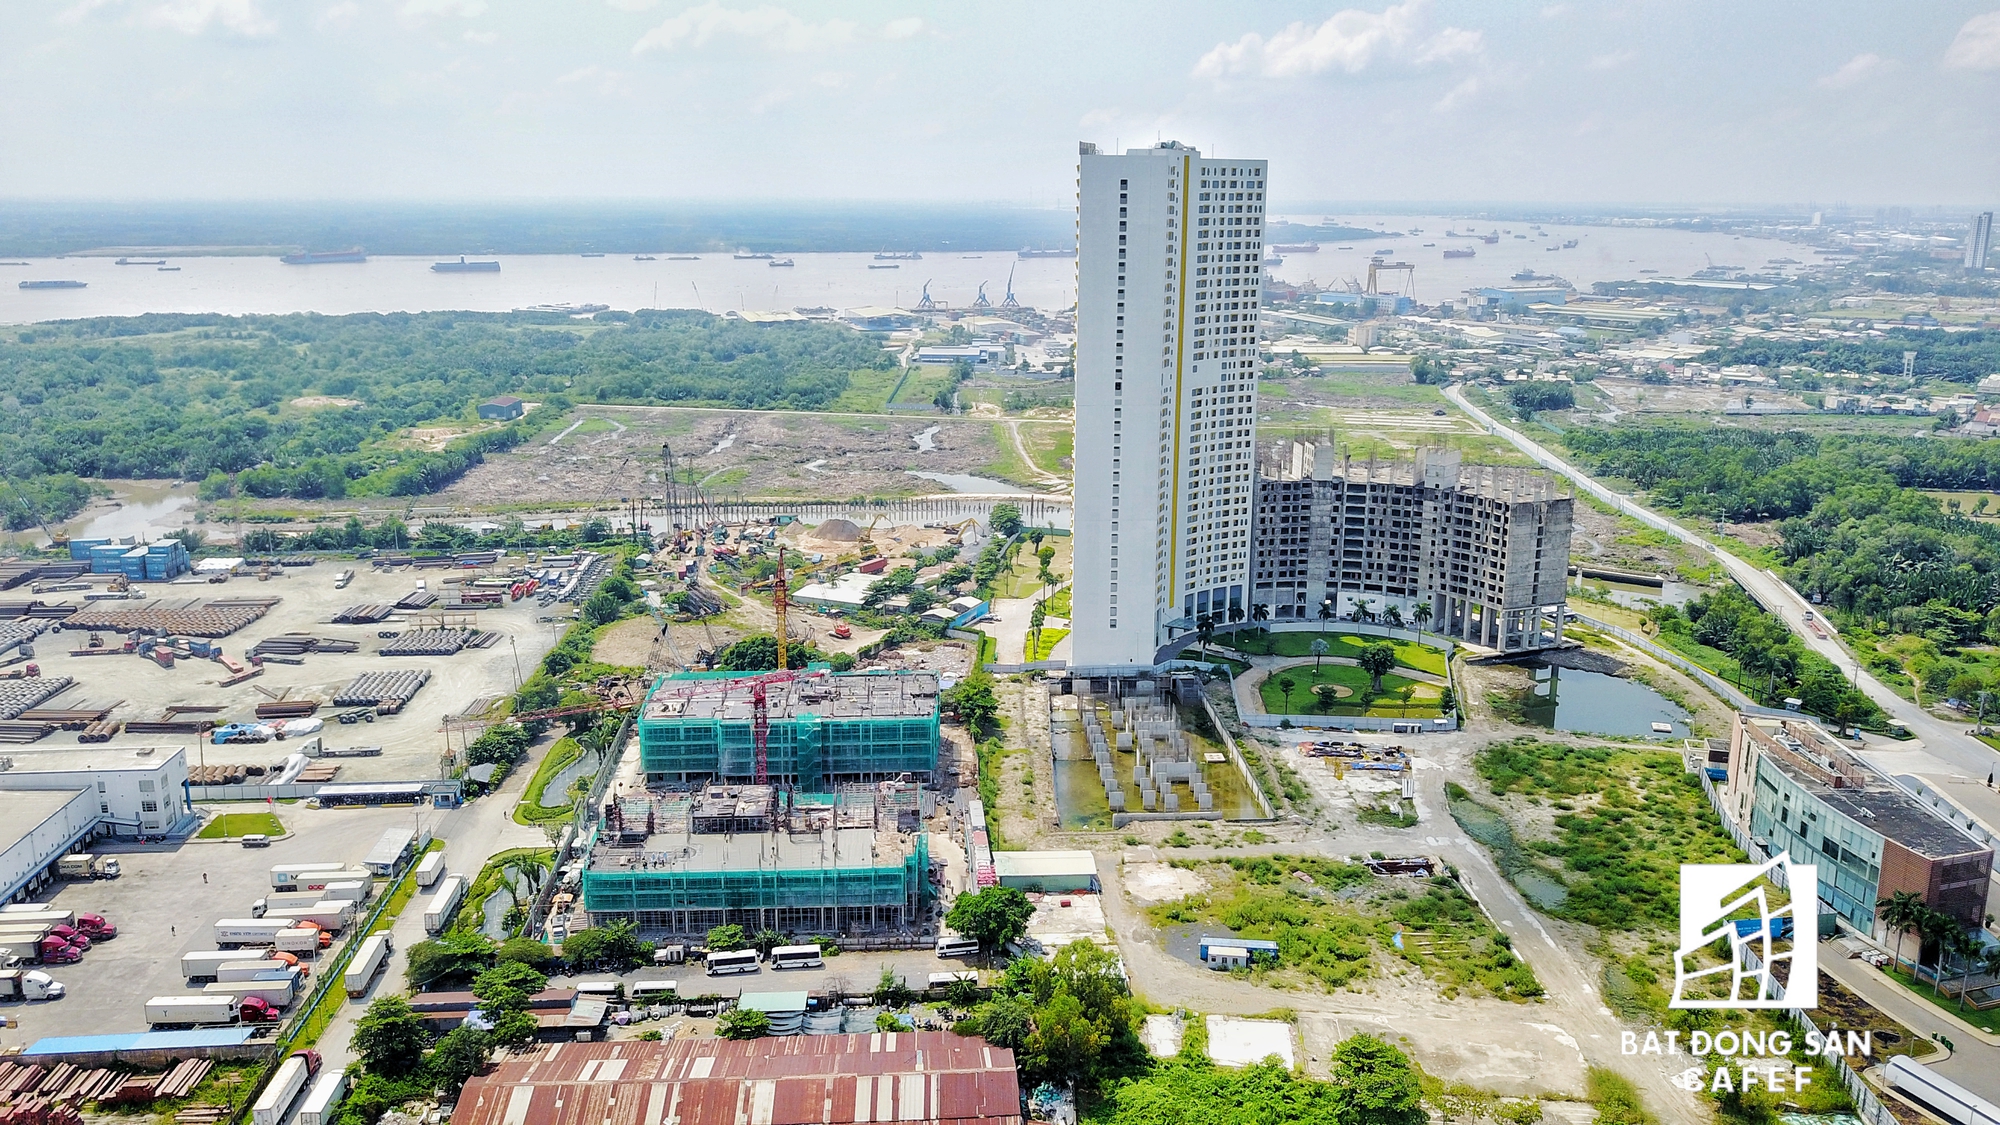 Xung quanh cảng Rau quả Sài Gòn (quận 7) đã và đang có nhiều dự án cao ốc đầu tư xây dựng. Đặc biệt, nằm cạnh khu cảng này là dự án 6 tỷ đô của tập đoàn Vạn Thịnh Phát